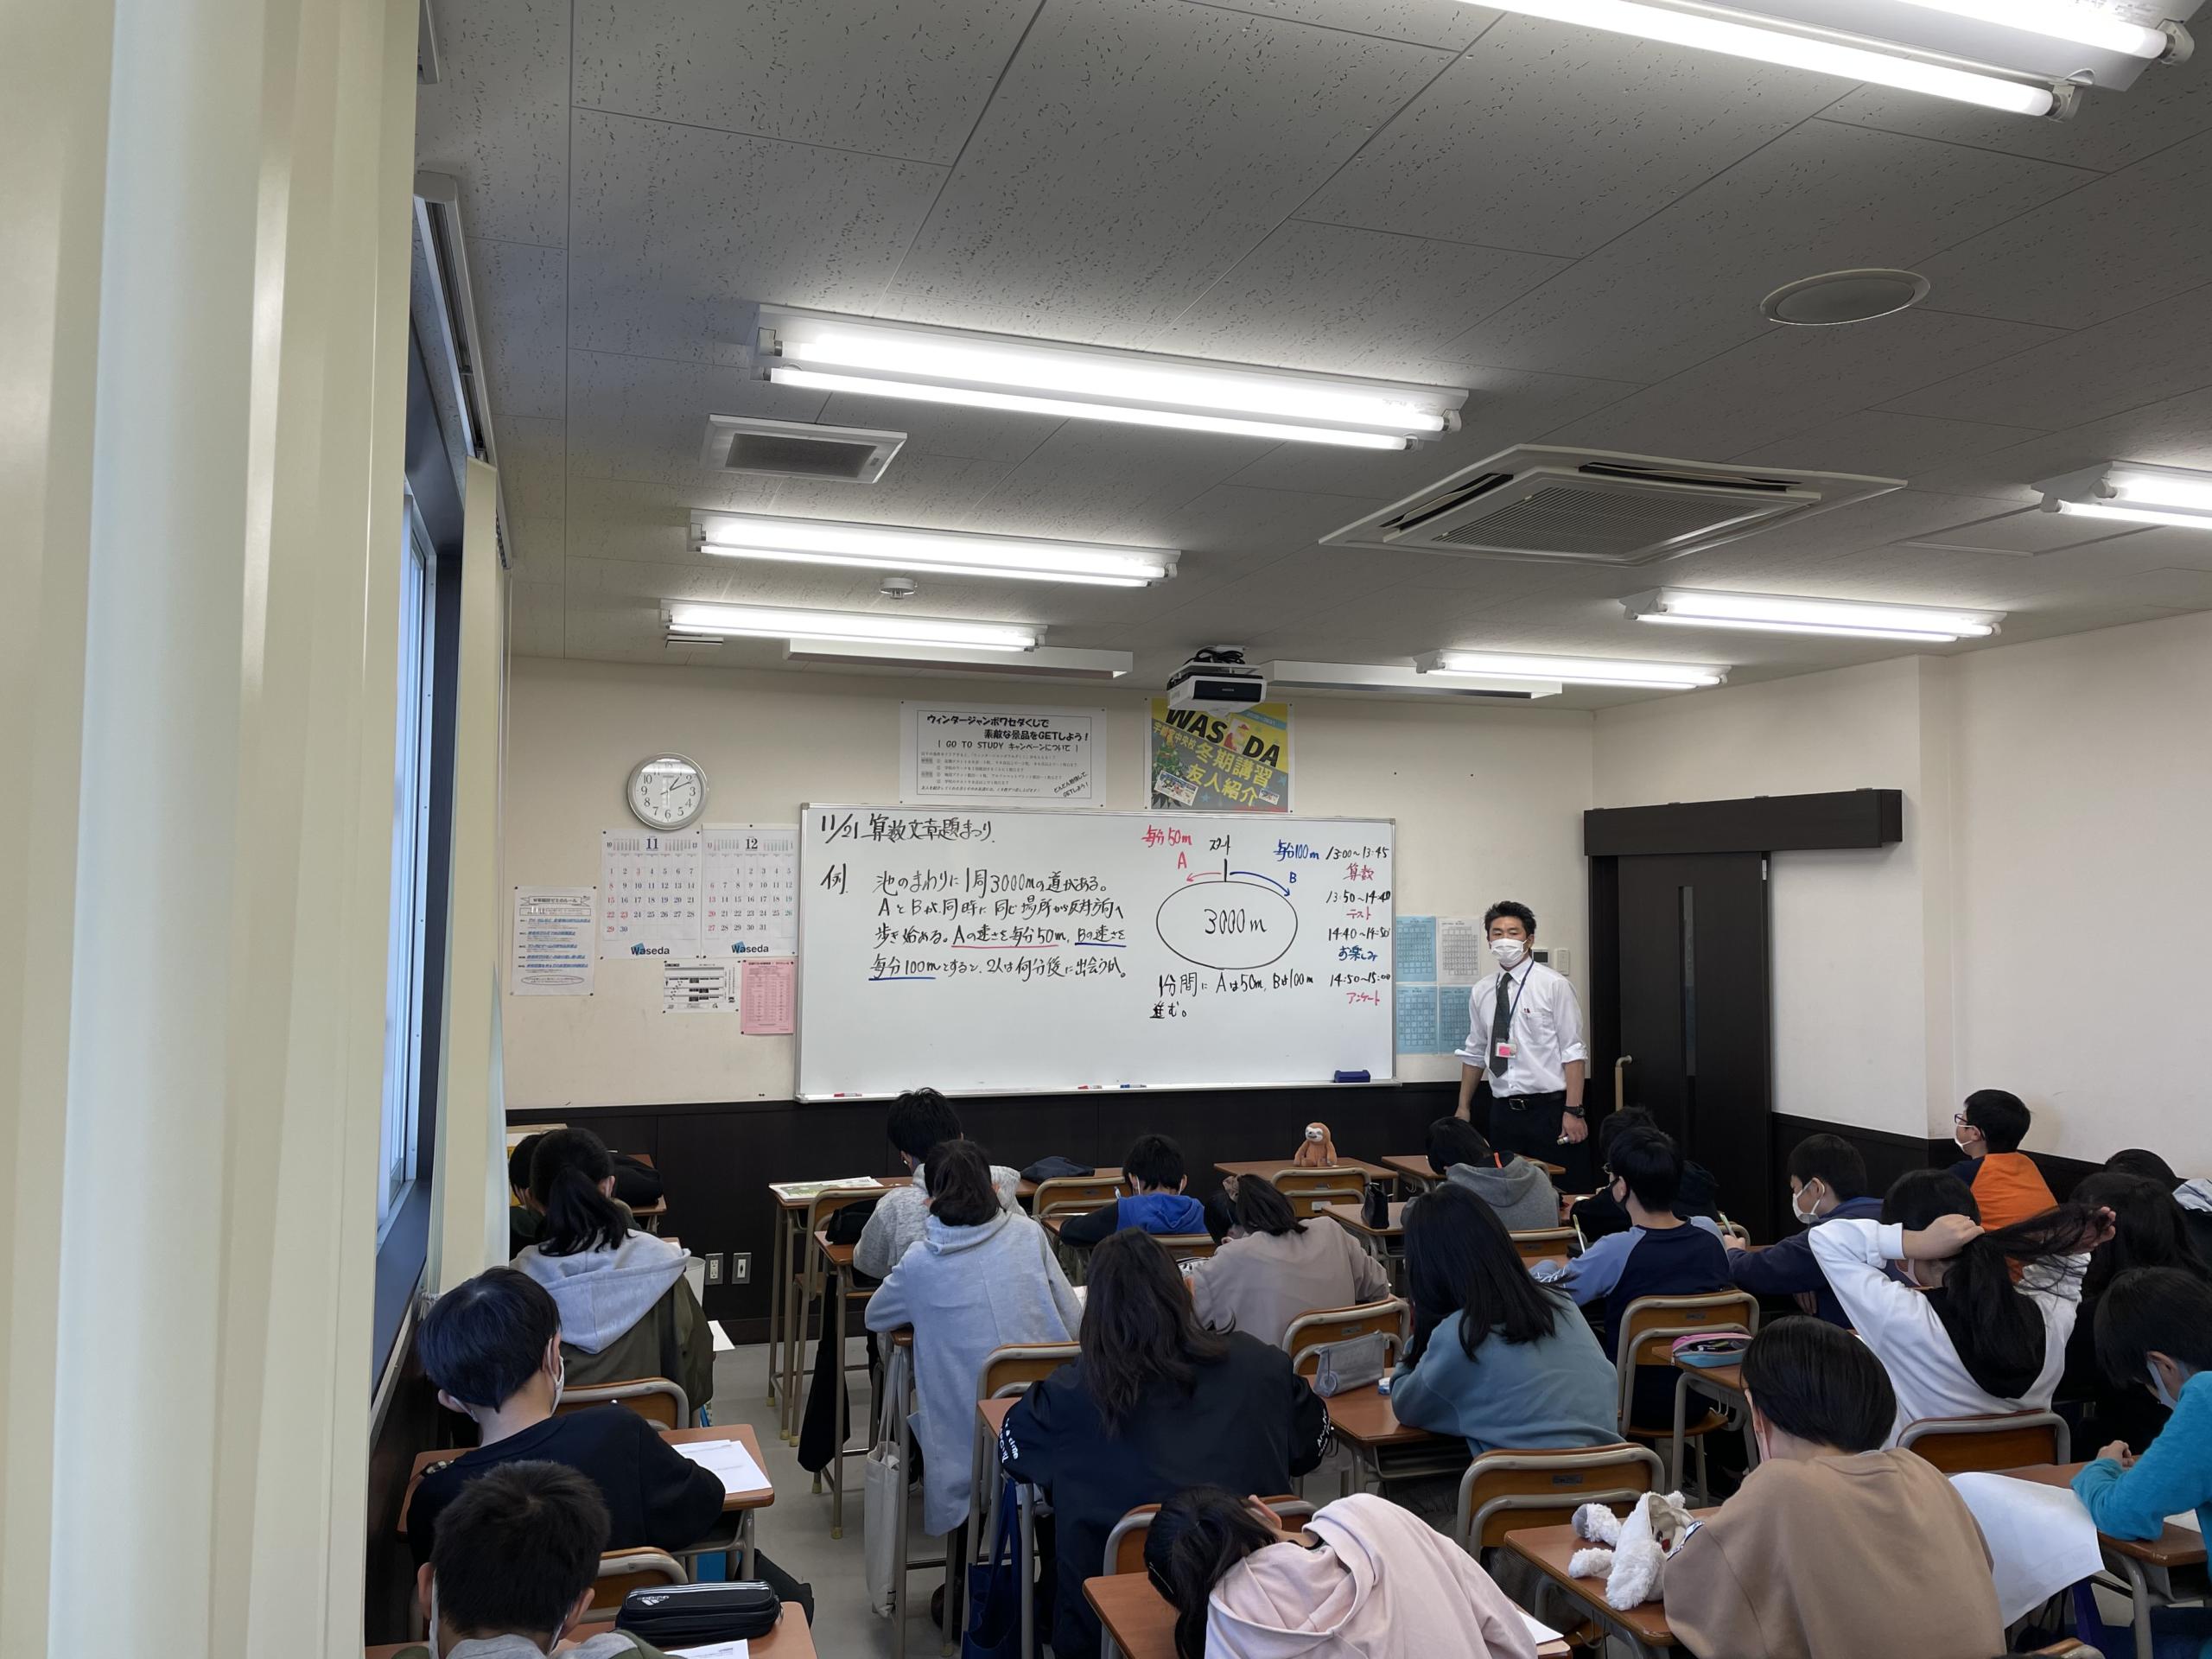 個別指導もおりまぜなら質問対応するW早稲田ゼミの授業風景